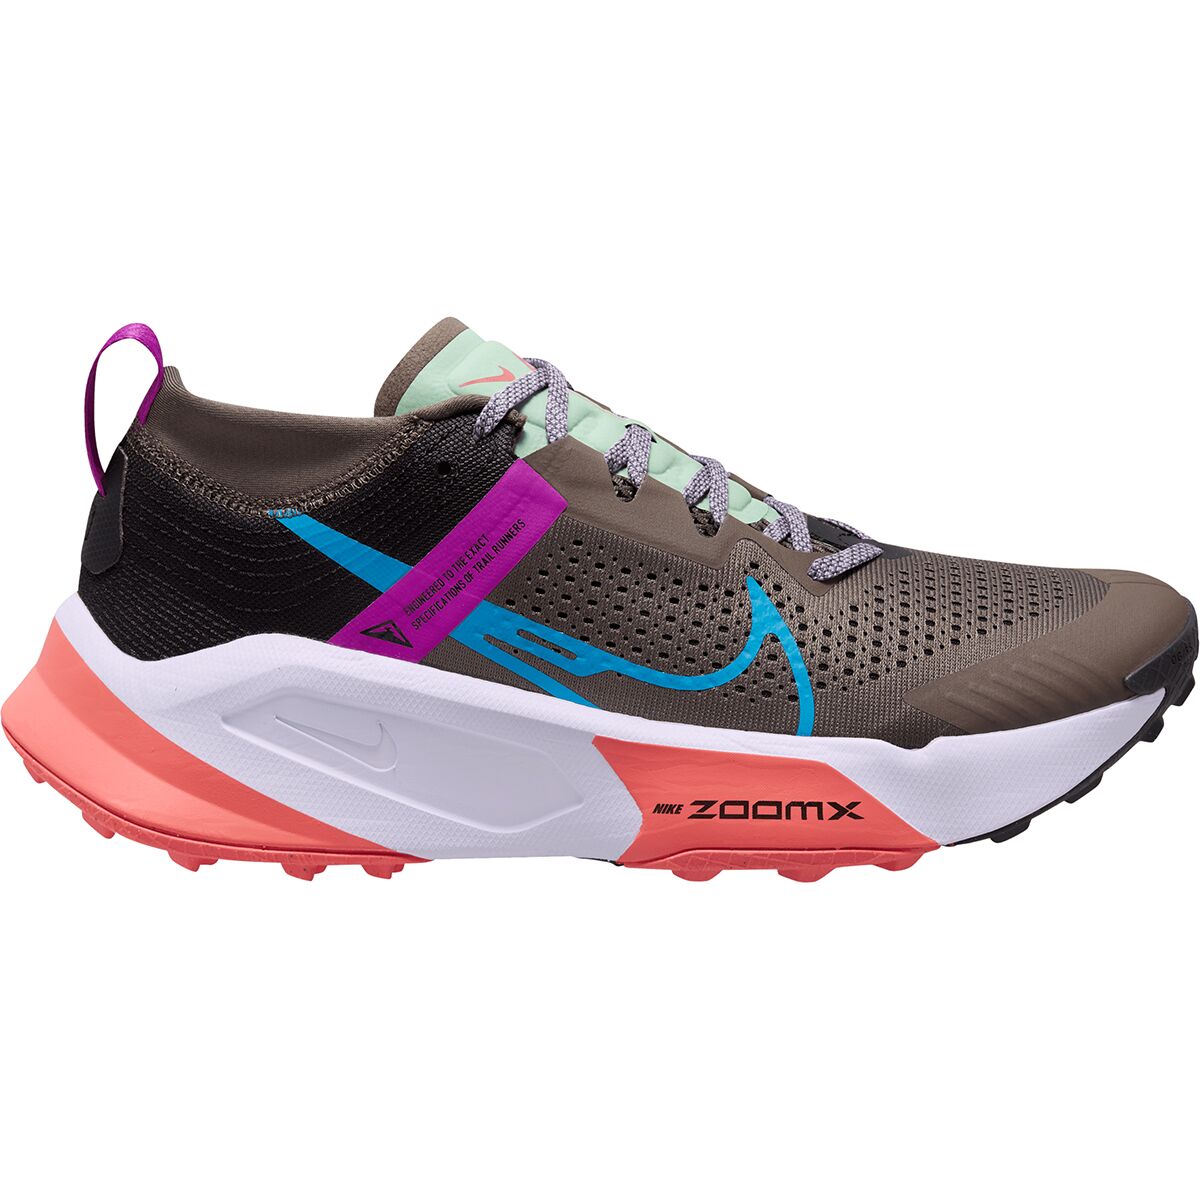 ZoomX Zegama Trail Running Shoe - Men